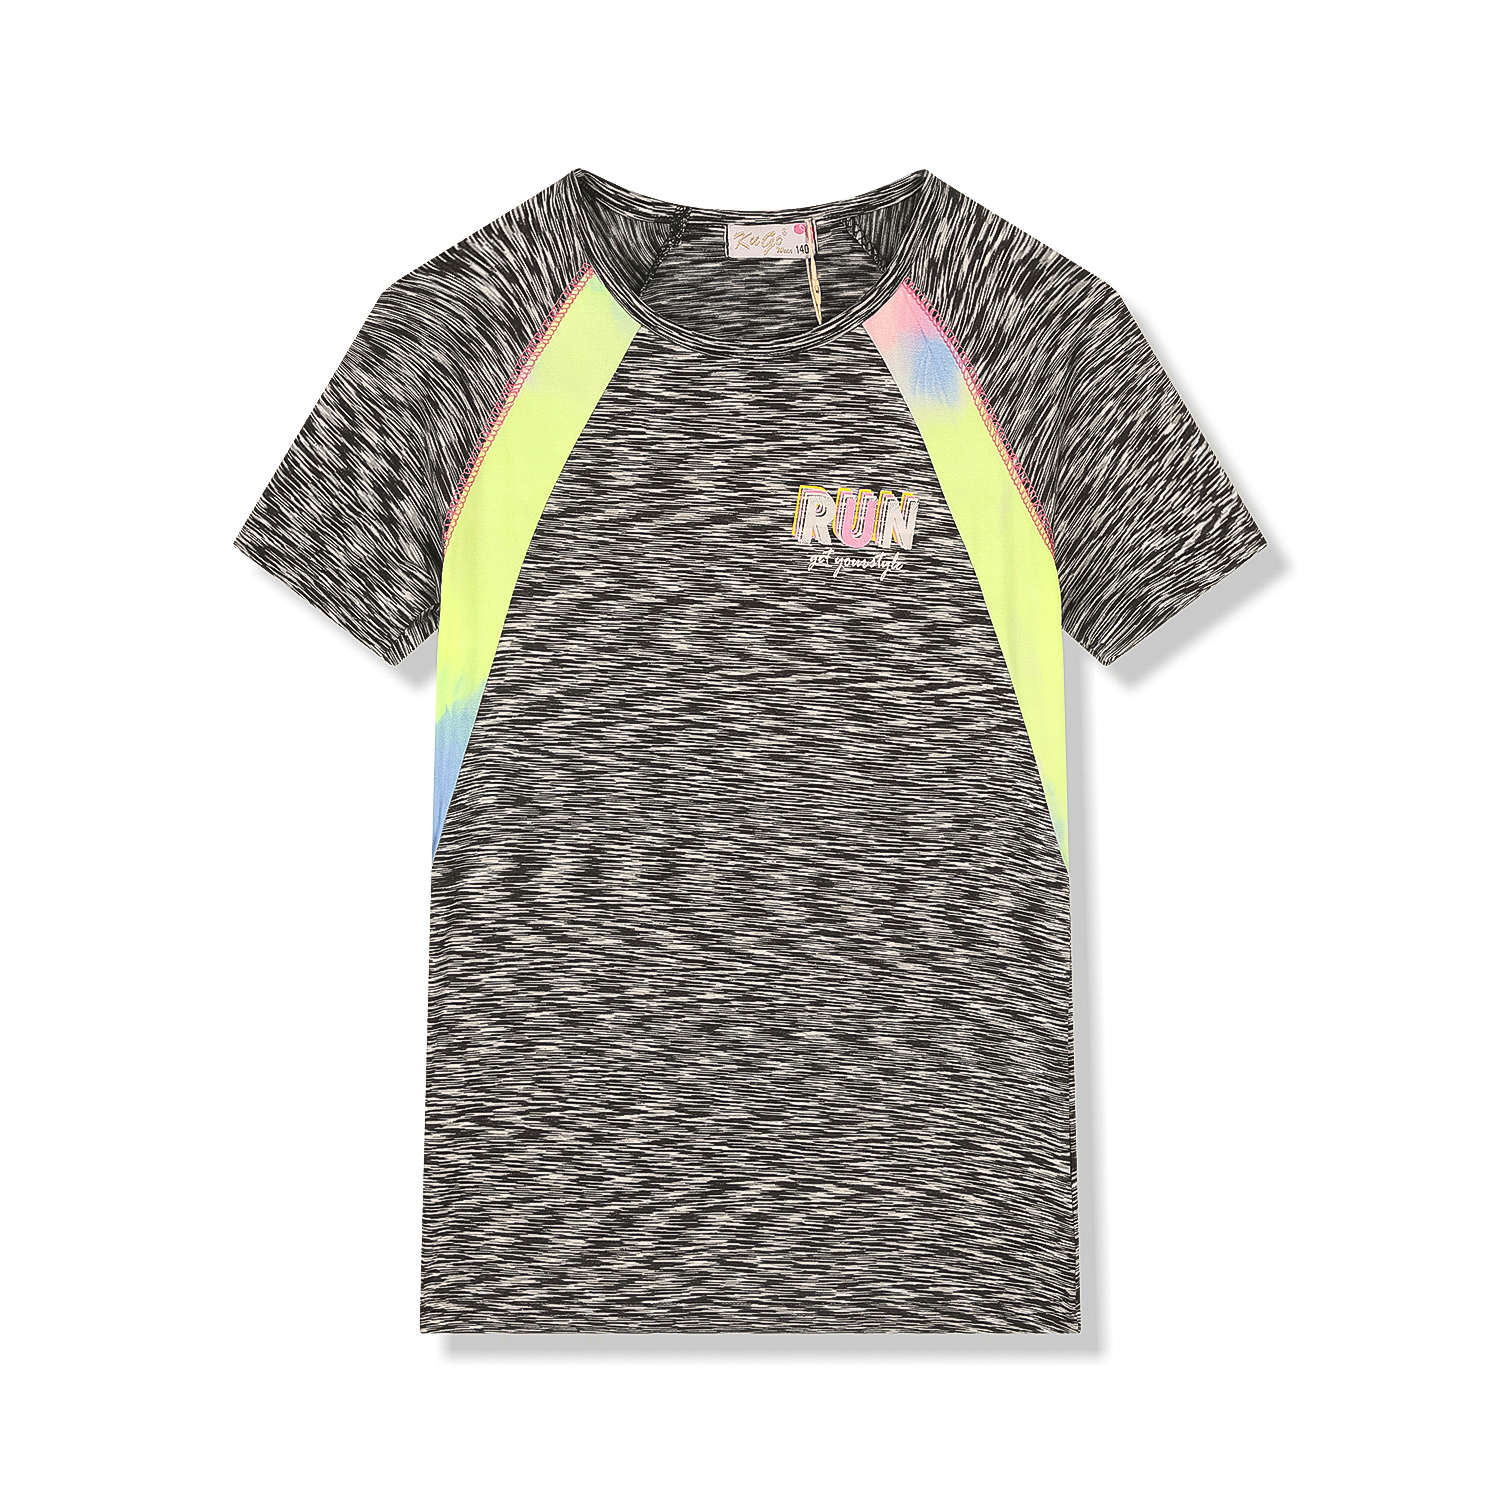 Dívčí funkční tričko - KUGO FC6756, šedočerná Barva: Černá, Velikost: 134